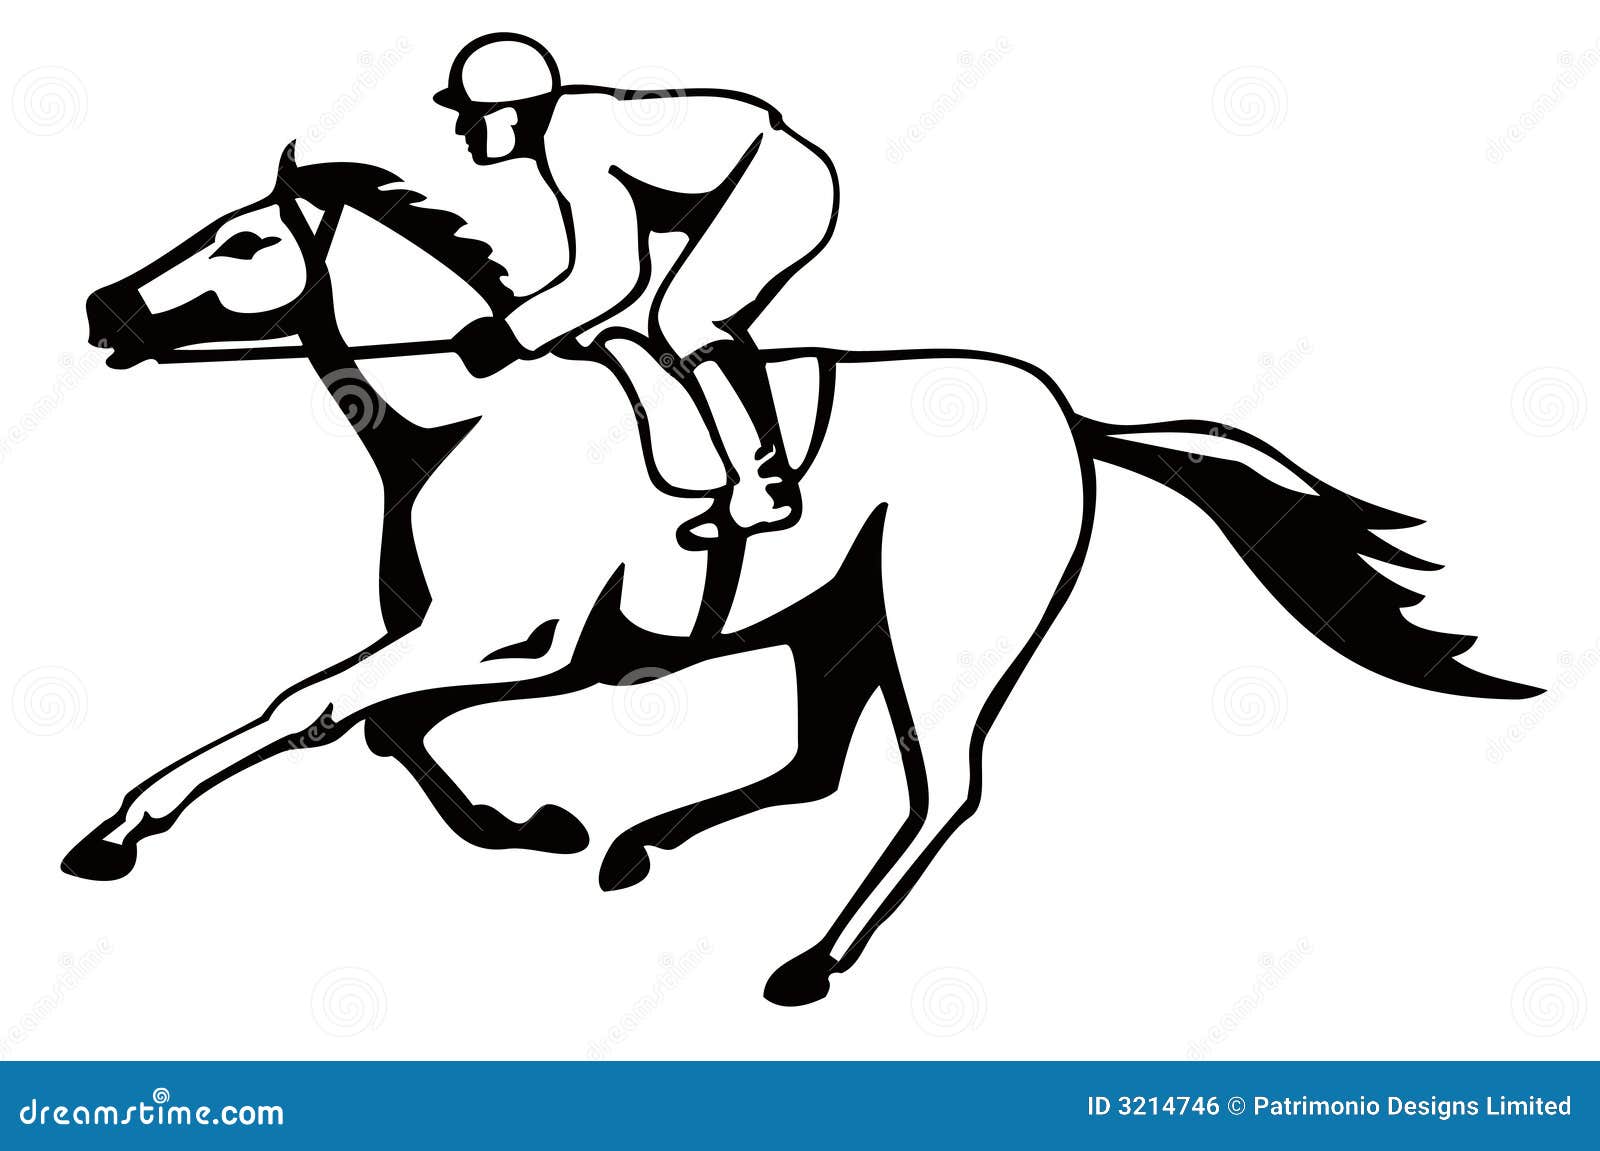 clipart horse and jockey - photo #11